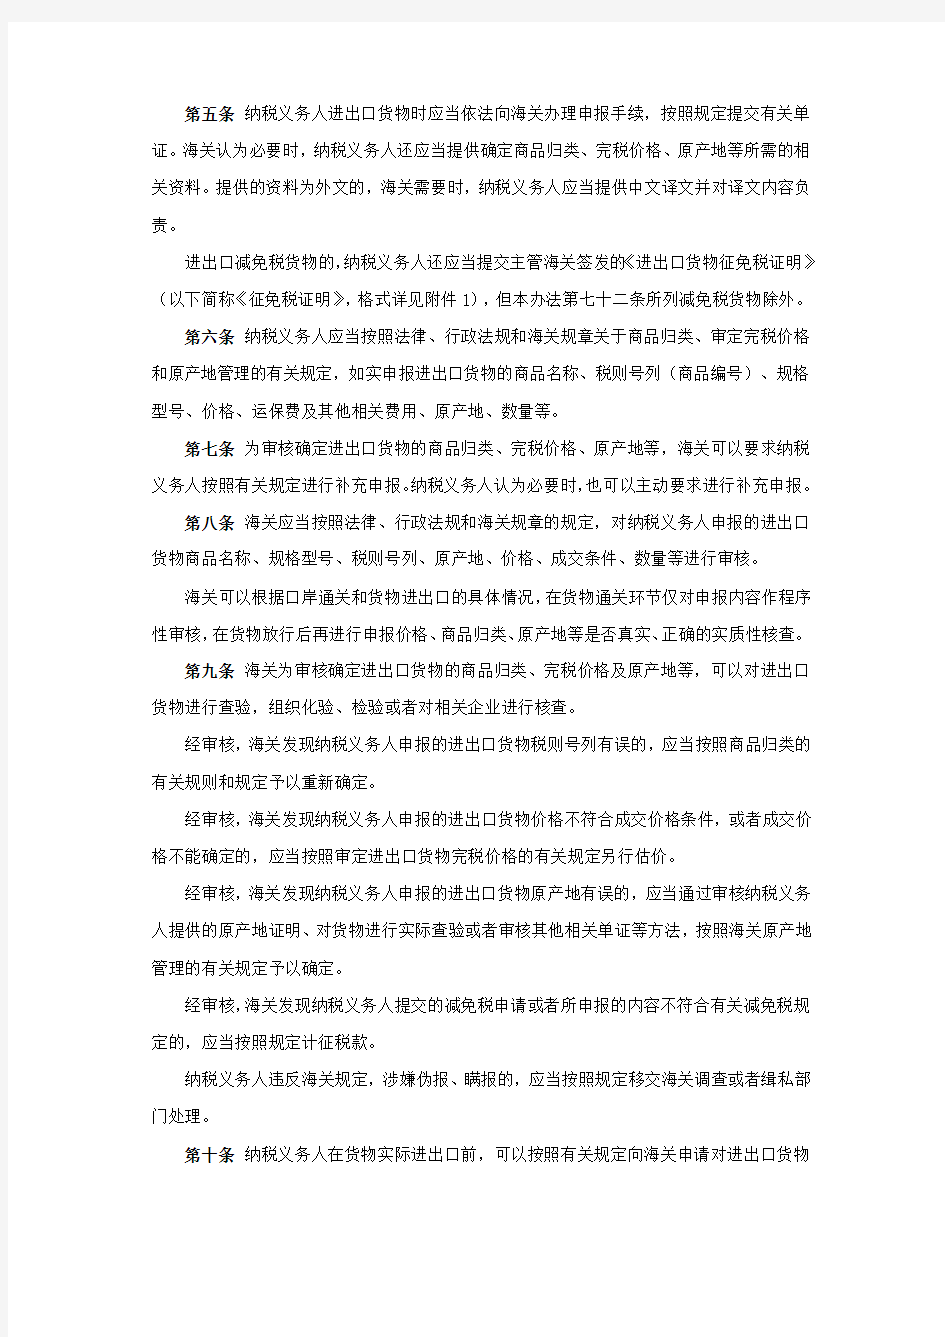 中华人民共和国海关进出口货物征税管理办法